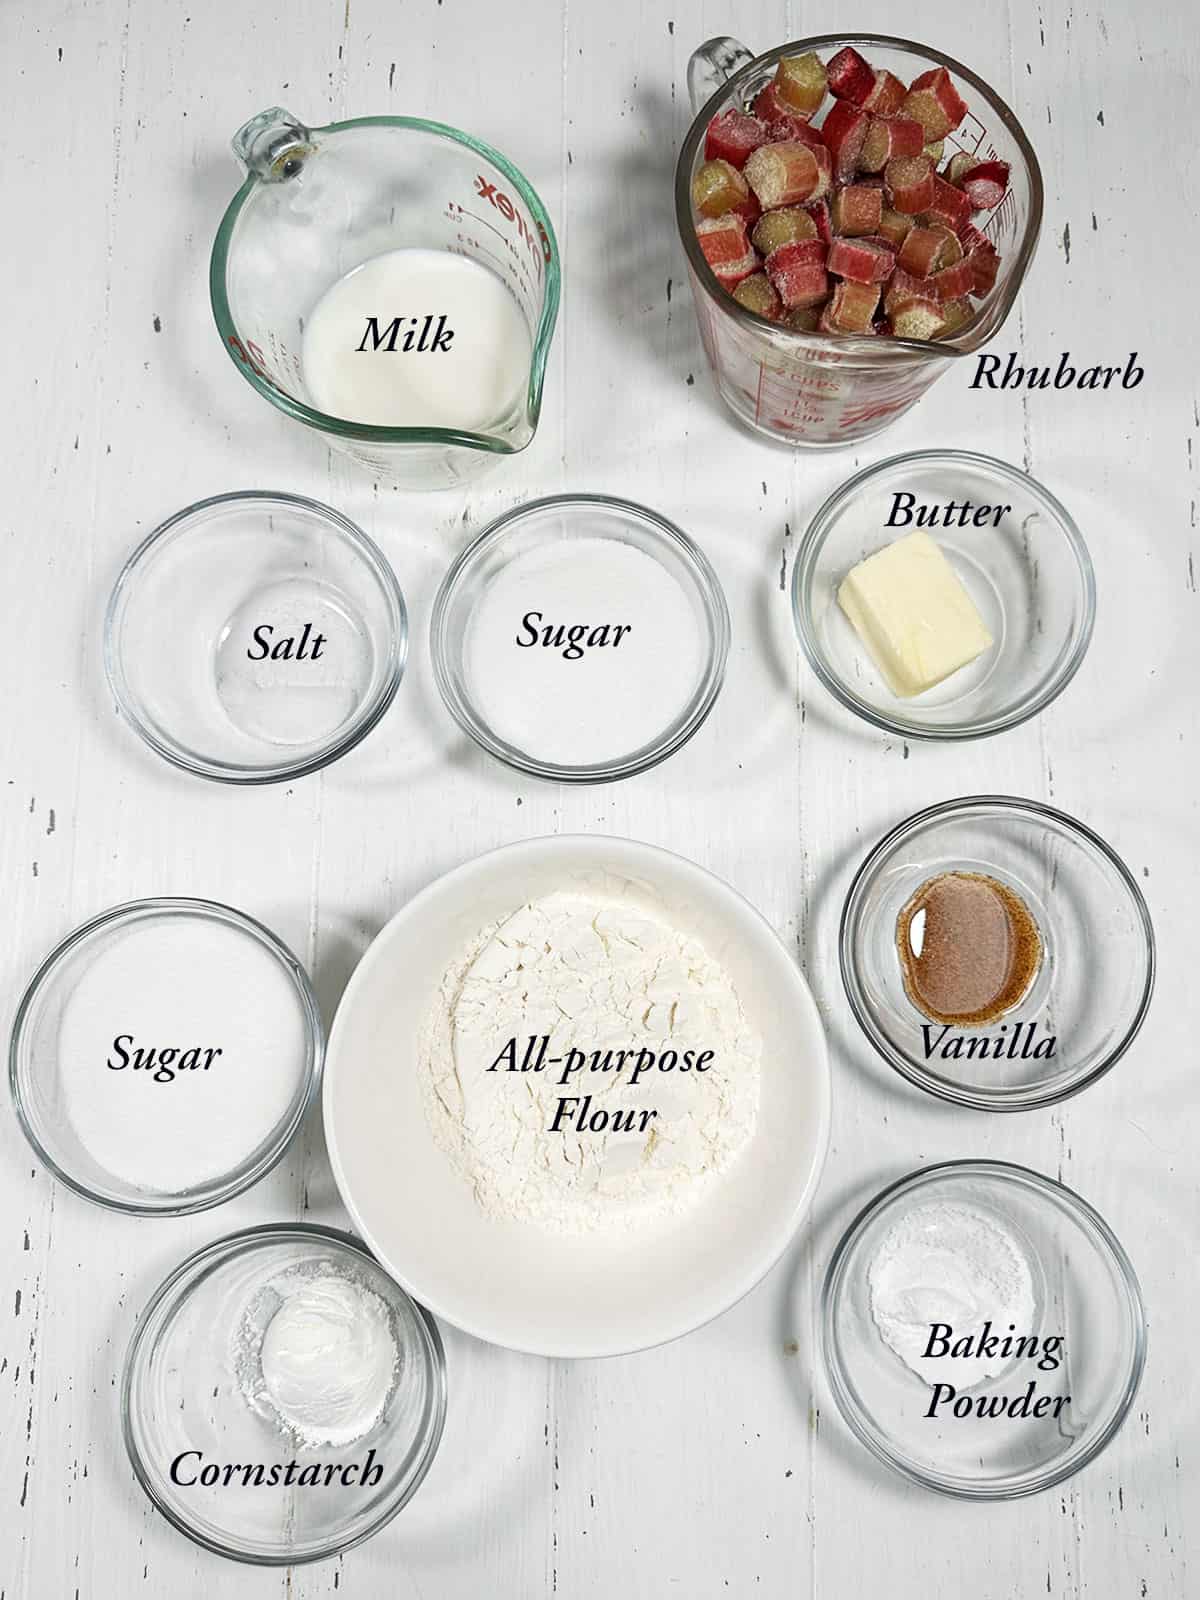 Ingredients for making rhubarb pudding cake.